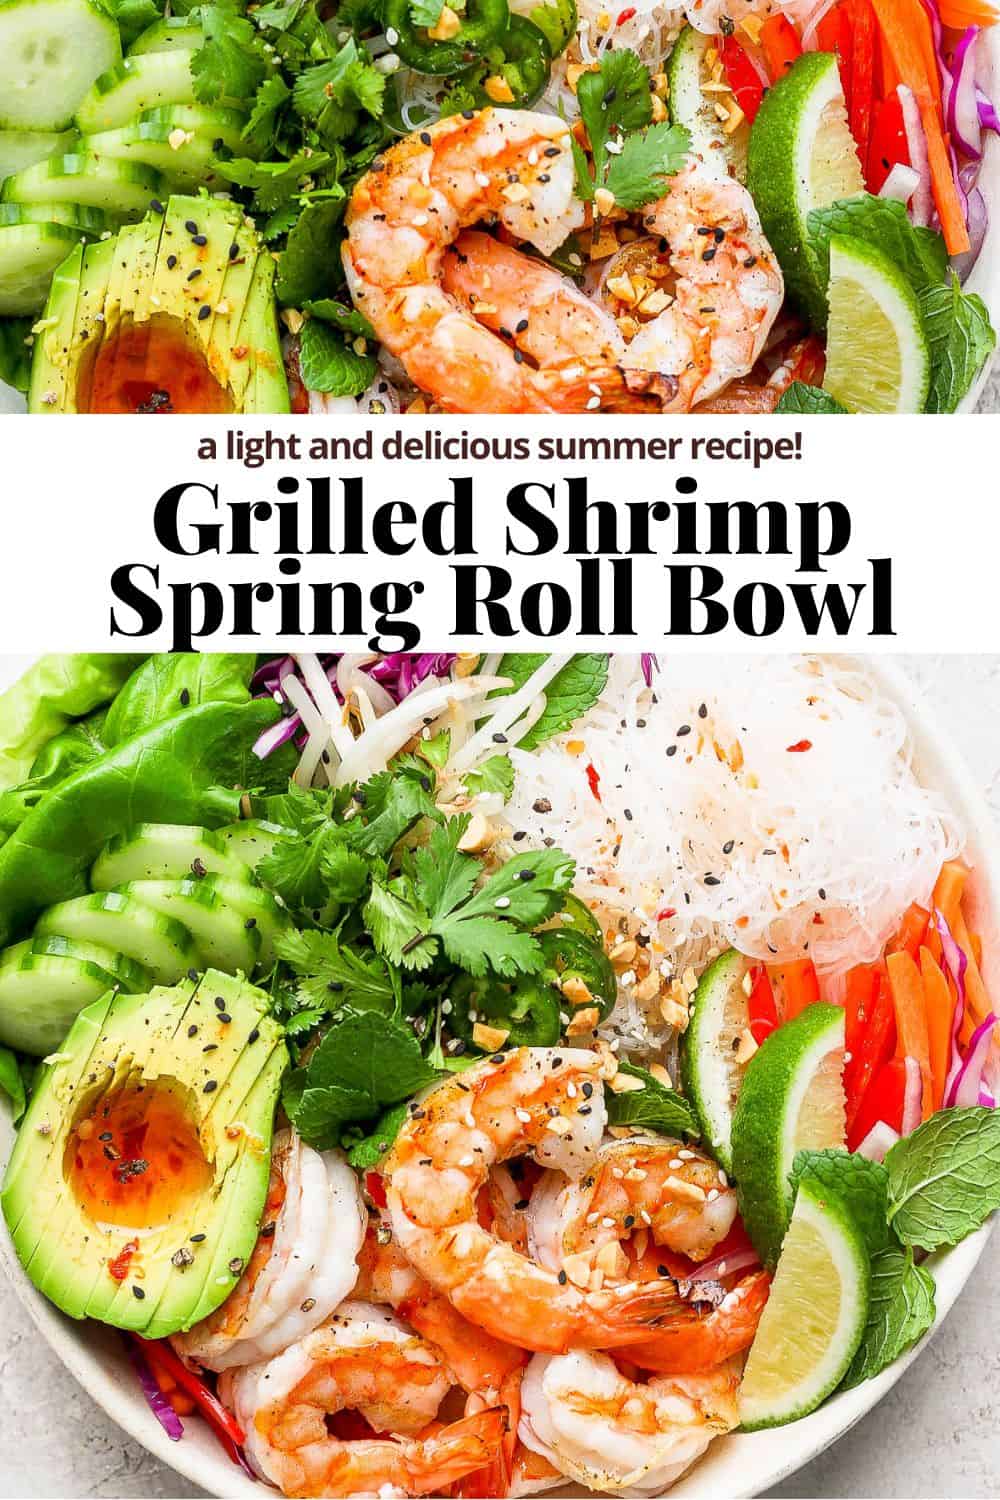 Pinterest image for shrimp spring roll bowls.